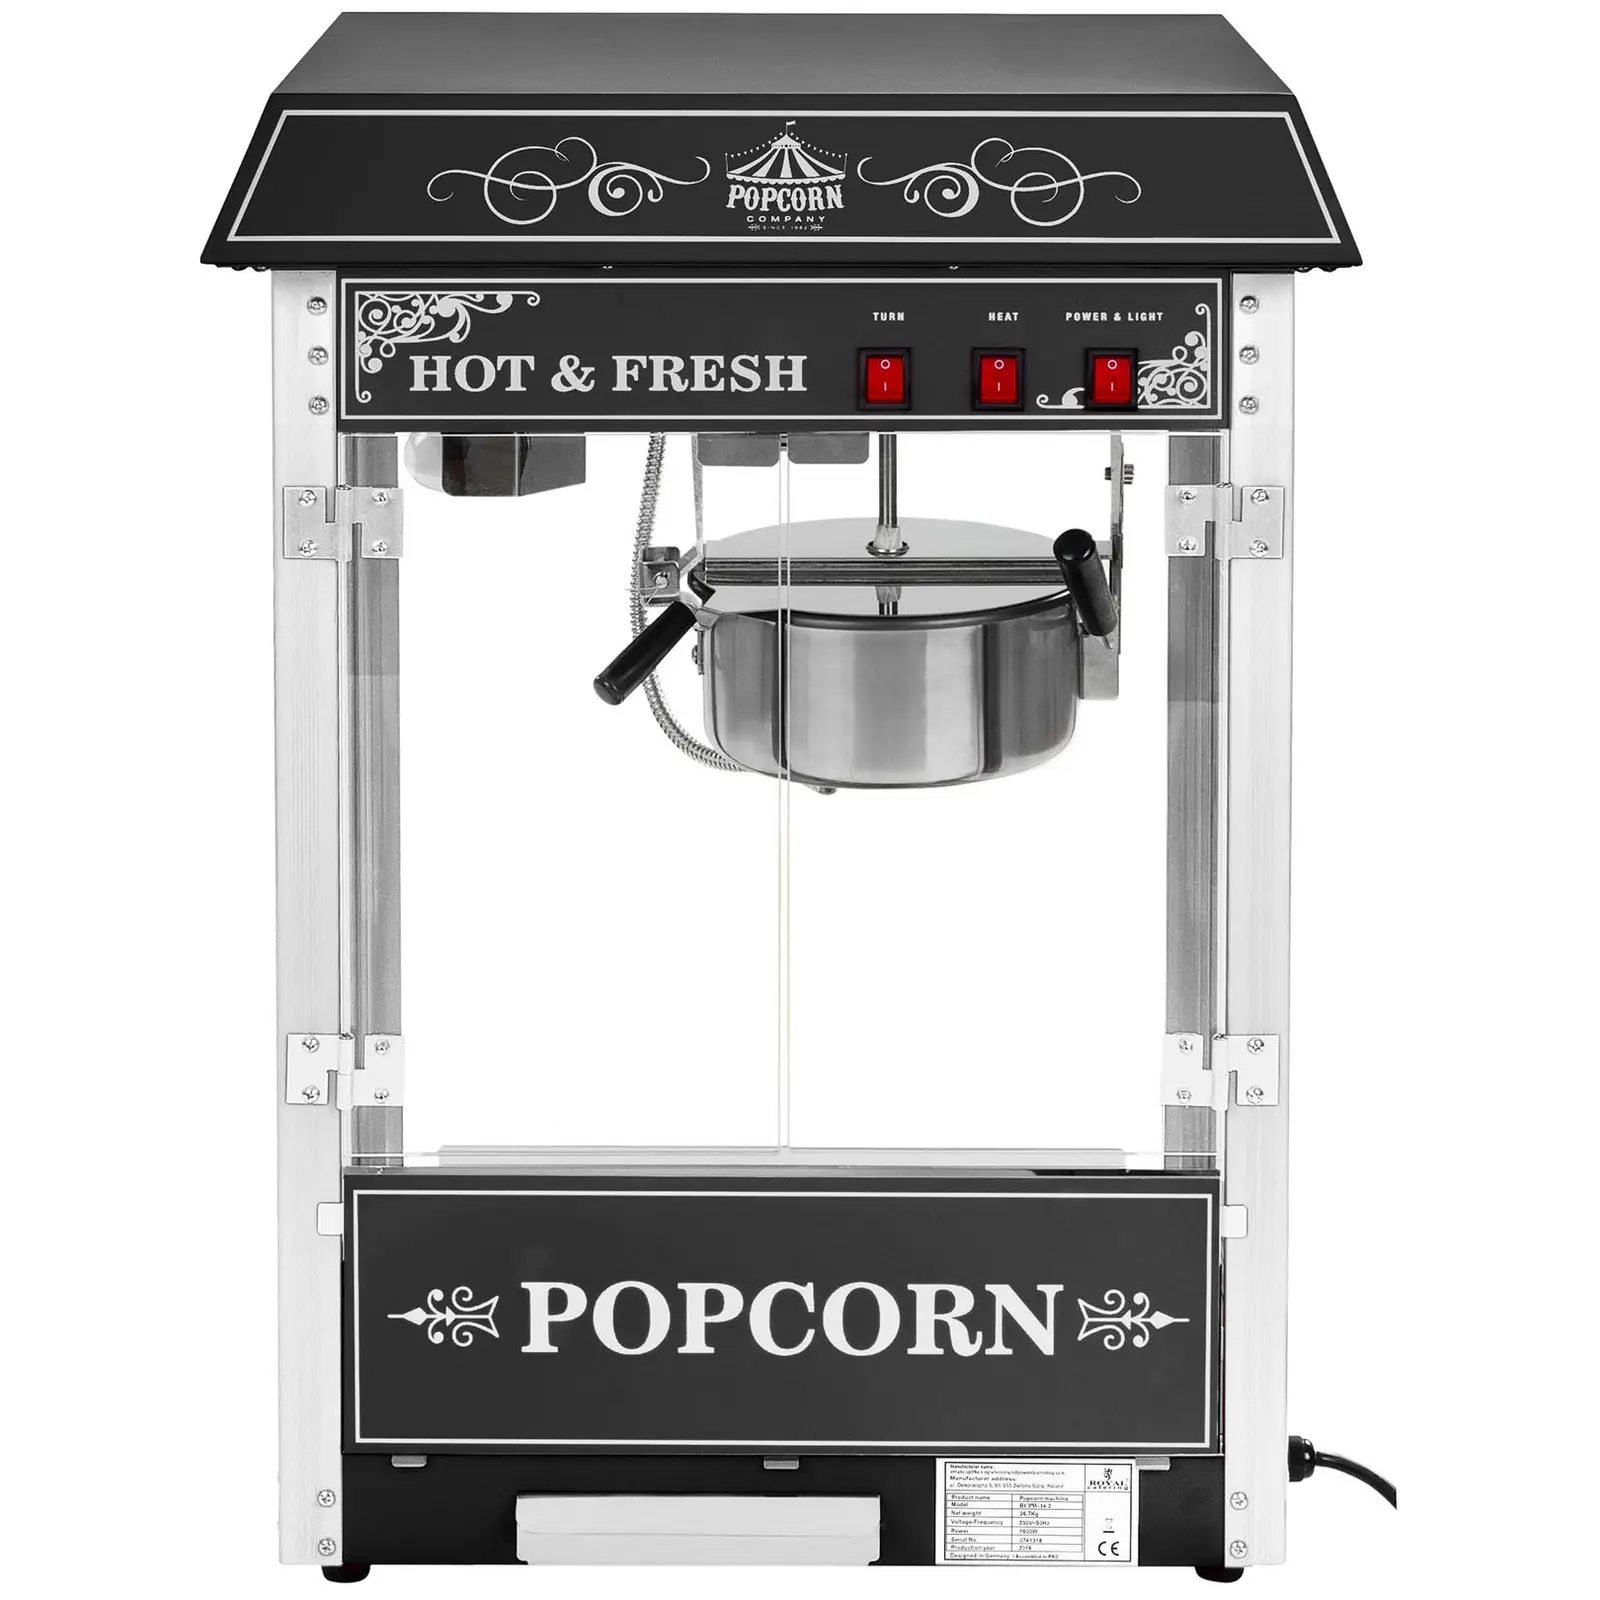 Popcornmaschine mit Wagen - Retro-Design - schwarz - Royal Catering 